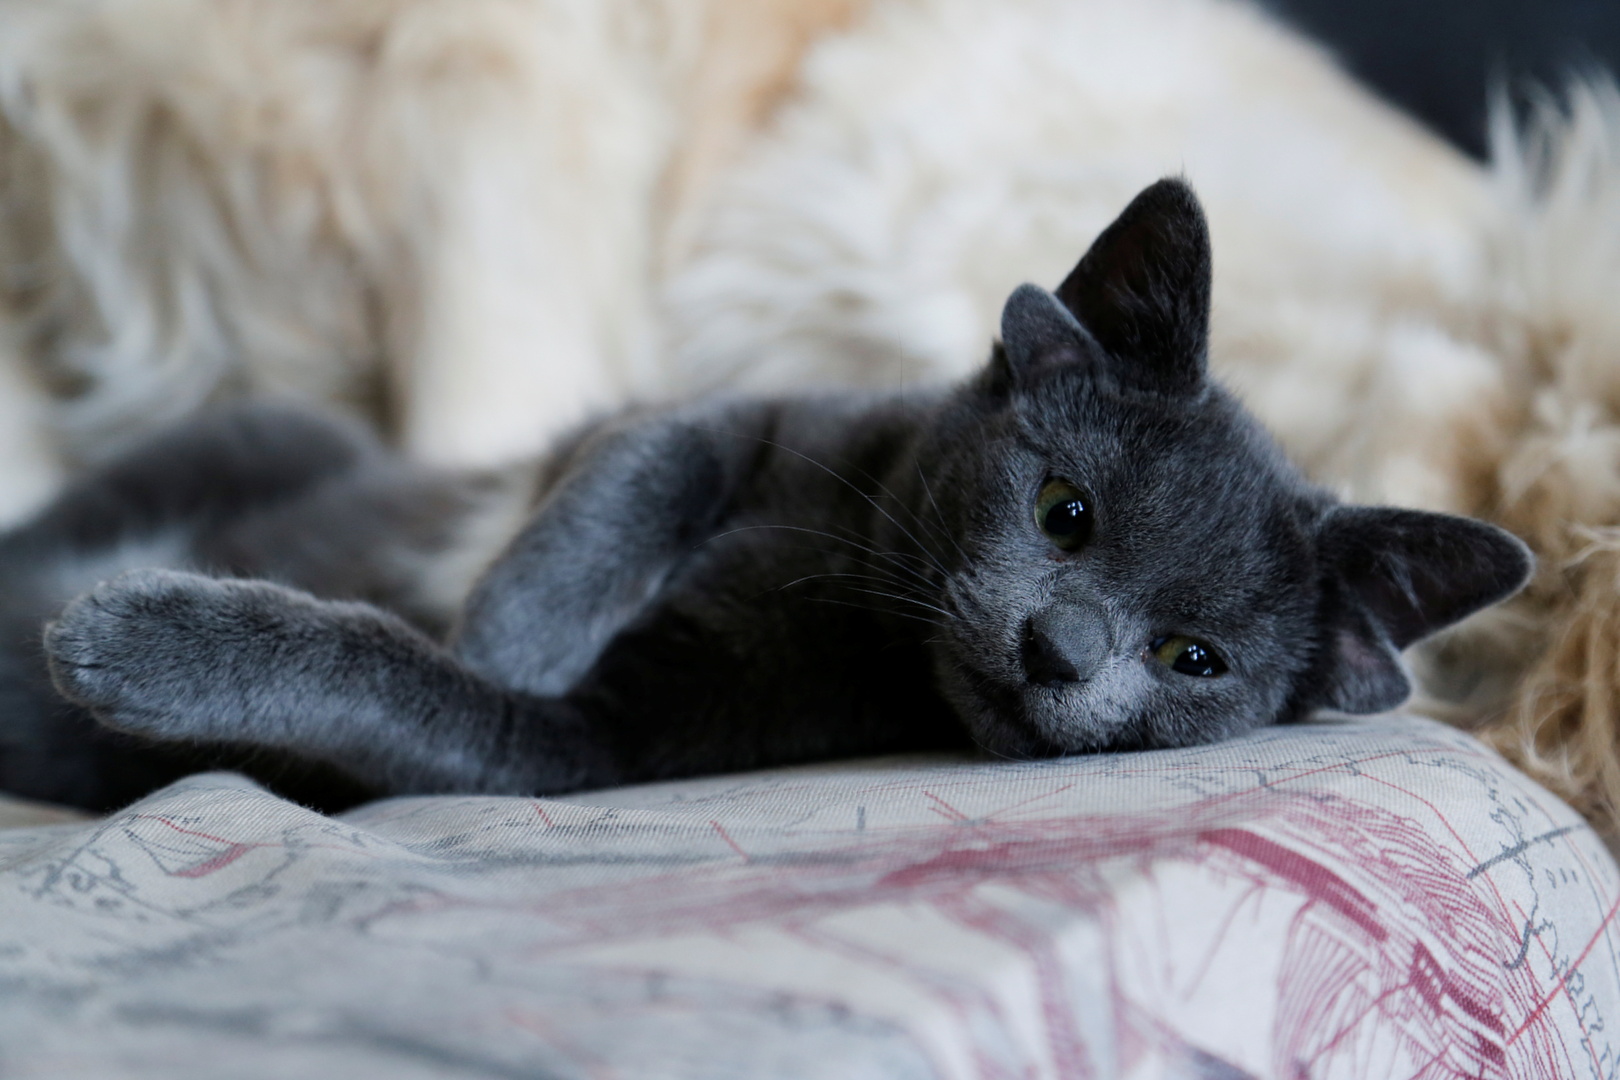 تركيا.. ولادة قطة بأربع آذان حظيت بشهرة واسعة على الإنترنت (صور)